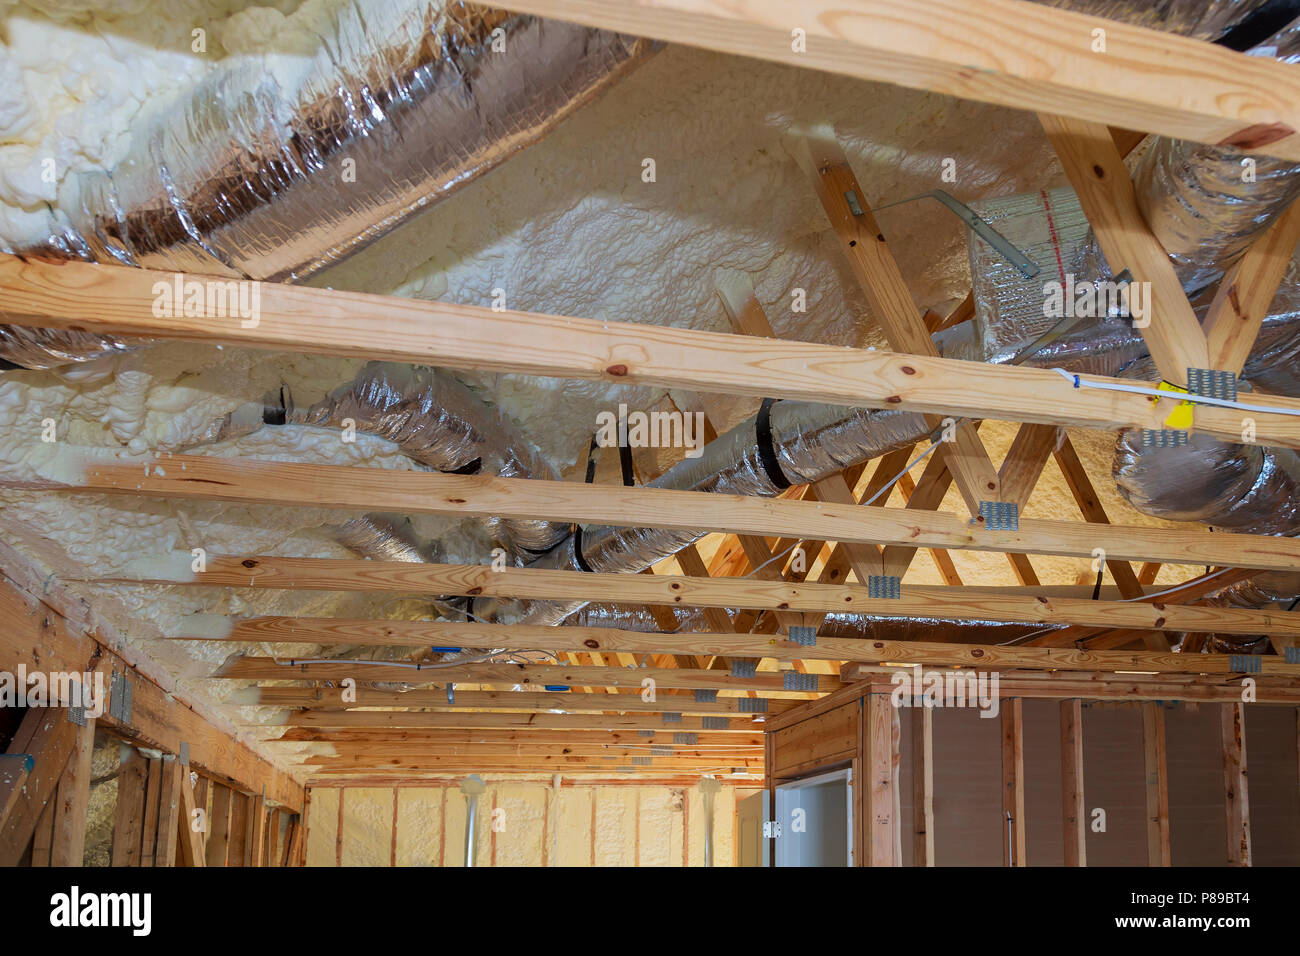 Rohre, Ventile schließen die Installation der Heizungsanlage auf dem Dach  der Leitung Haus Heizung mit Röhren Stockfotografie - Alamy